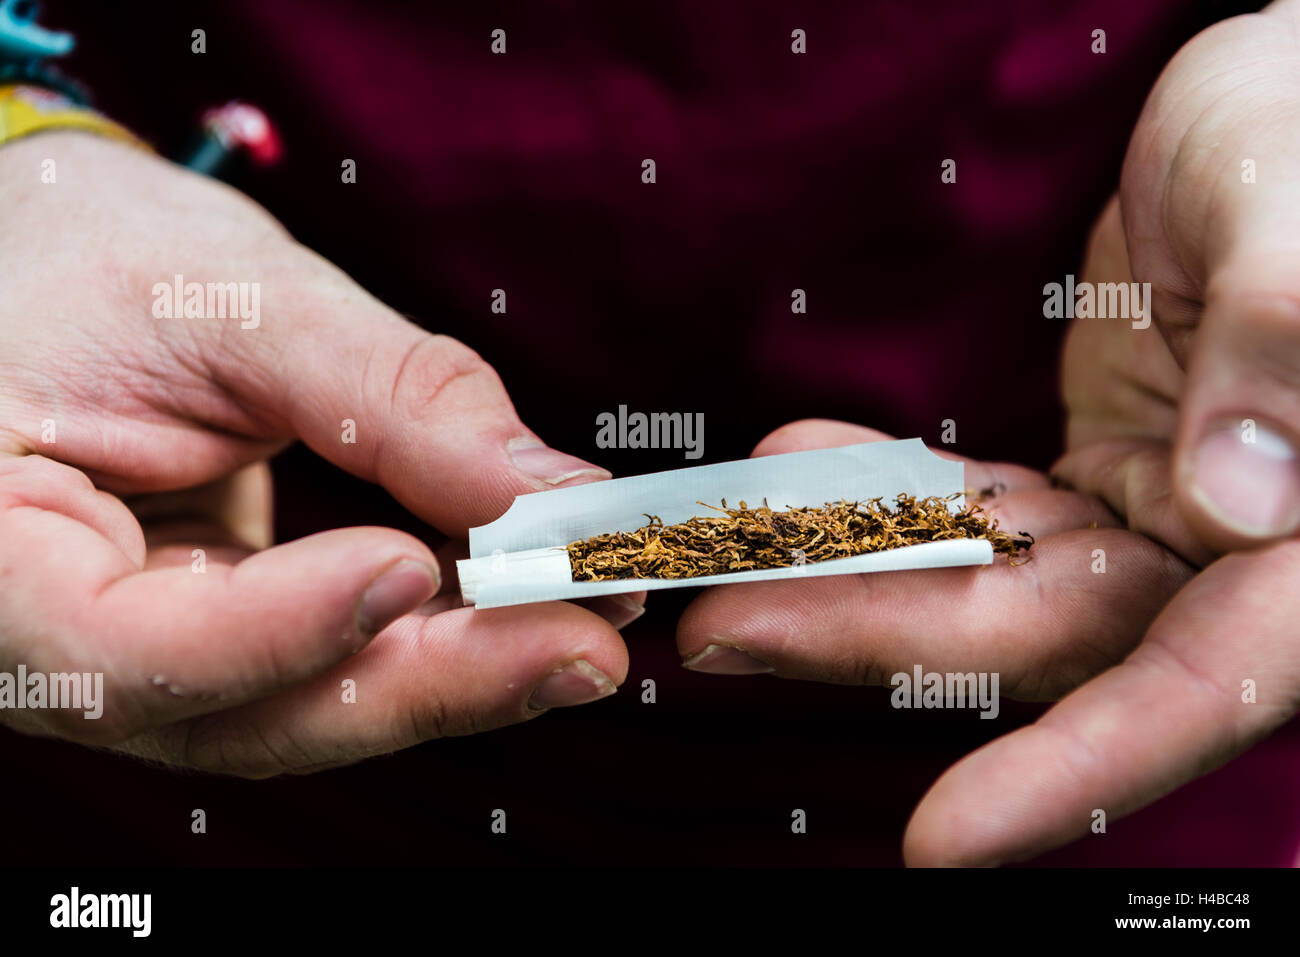 Le mani la laminazione di una sigaretta con il tabacco e il filtro, fumatori Foto Stock